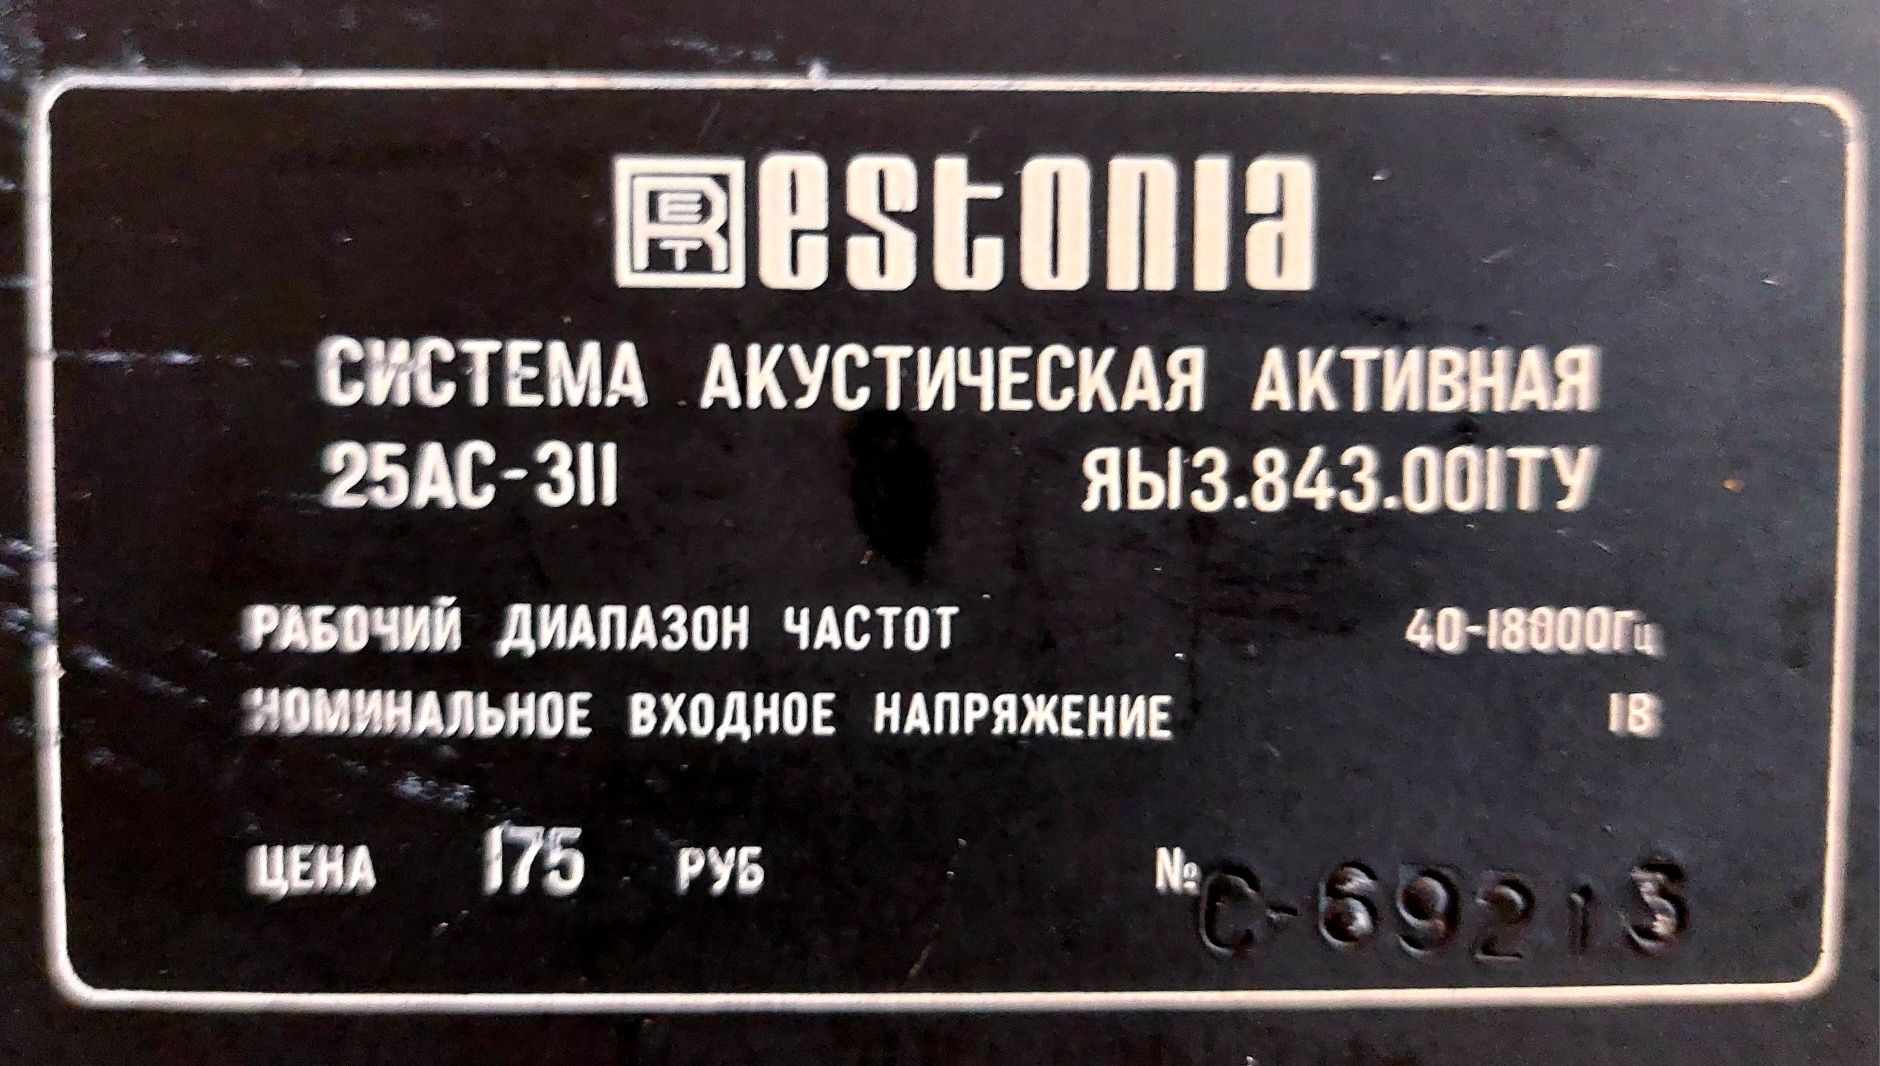 Активні колонки Estonia 25AC-311